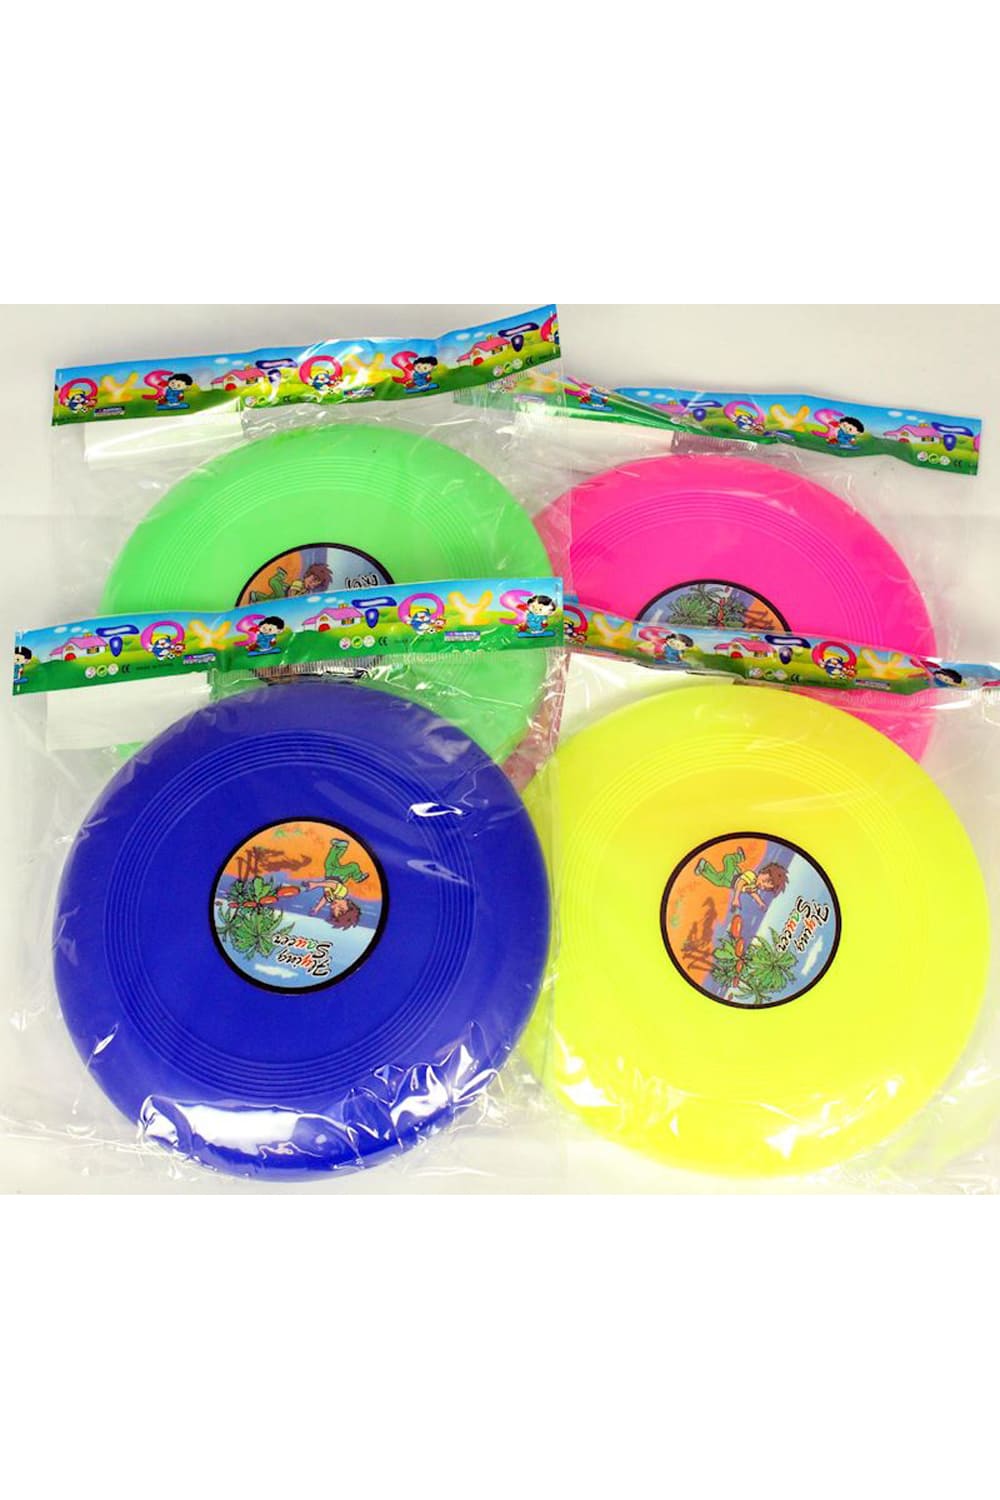 Frisbee Mini in den Farben gruen, rosa, blau und gelb. Toller Frisbee fuer Kinder als Mitbringsel.